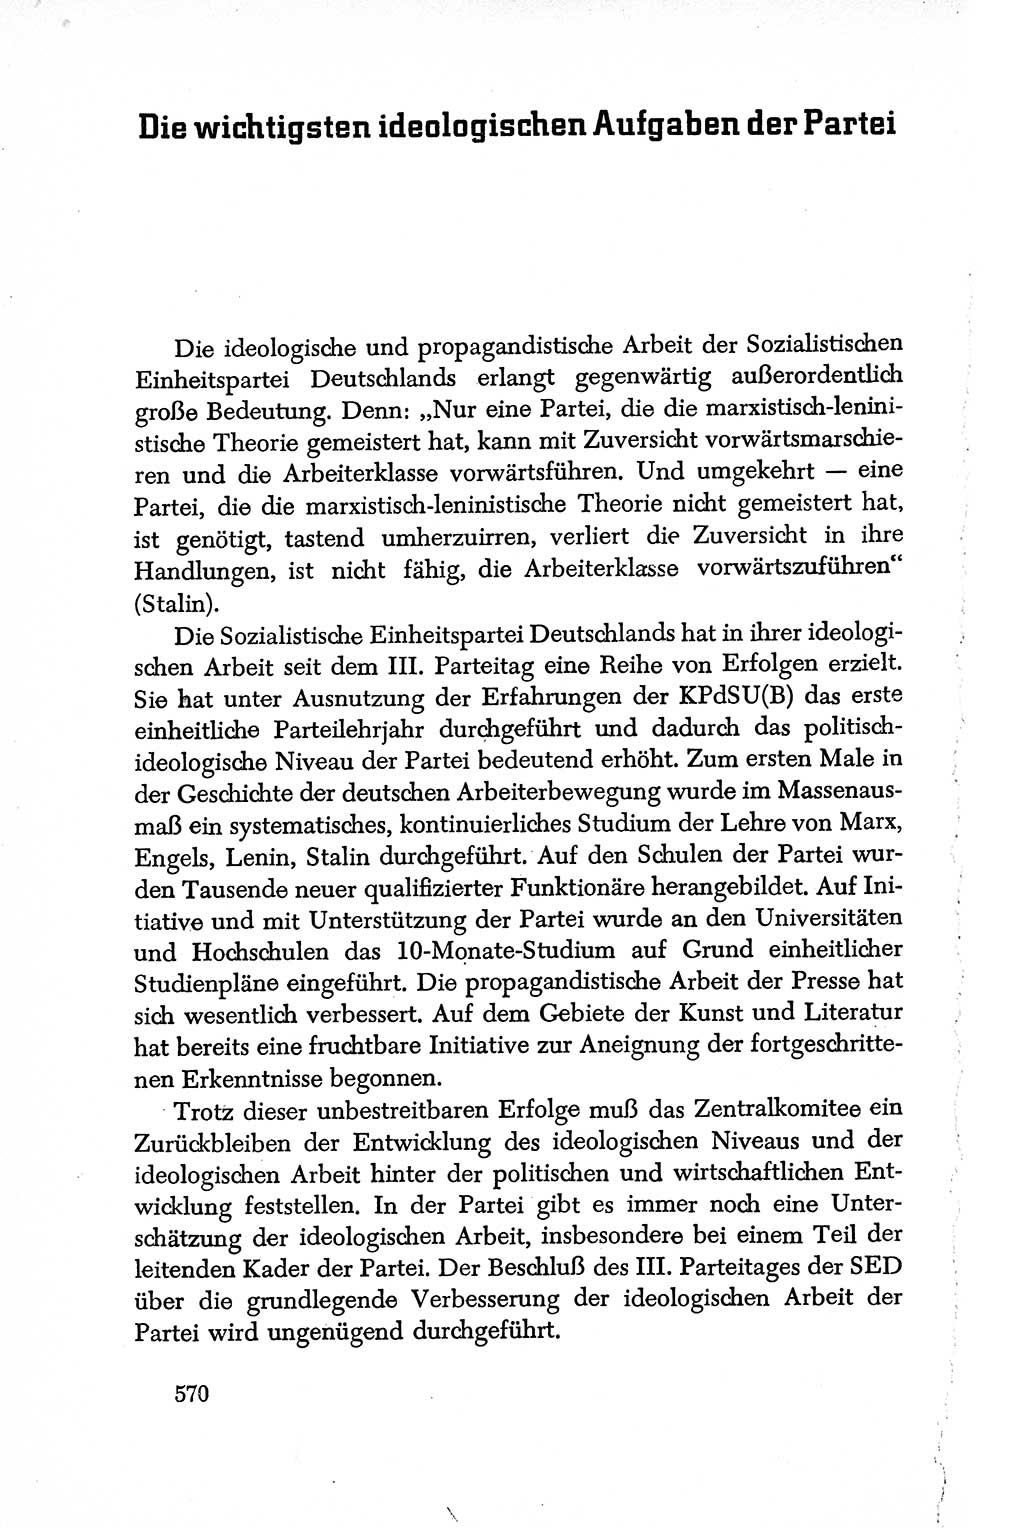 Dokumente der Sozialistischen Einheitspartei Deutschlands (SED) [Deutsche Demokratische Republik (DDR)] 1950-1952, Seite 570 (Dok. SED DDR 1950-1952, S. 570)